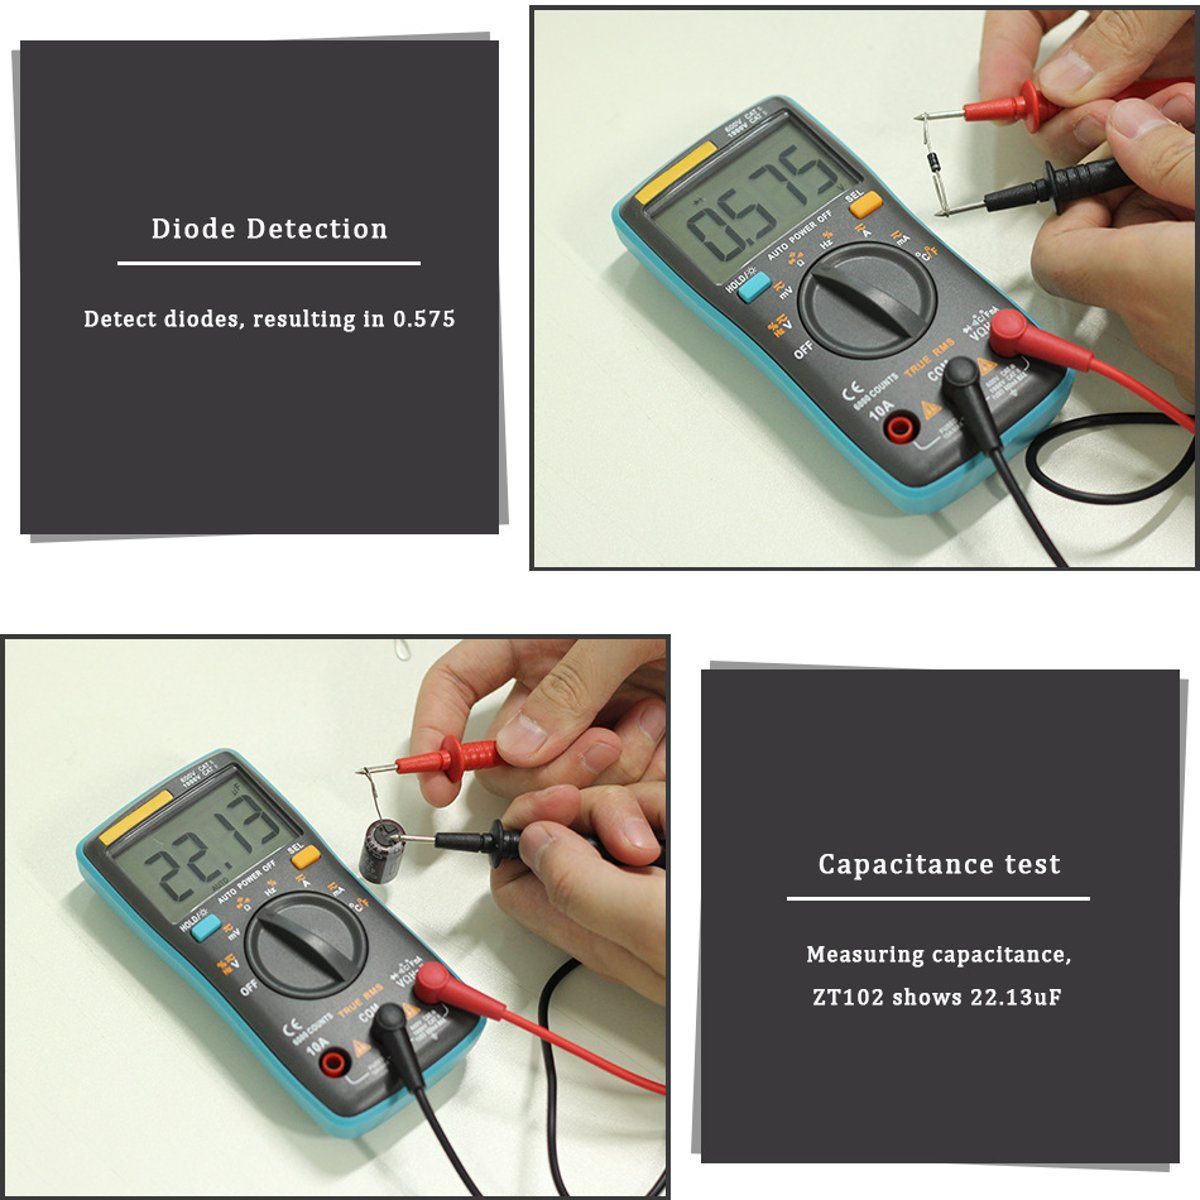 Digital-LCD-Multimeter-Voltmeter-Portable-Ammeter-AC-DC-Volt-Current-Test-1539477